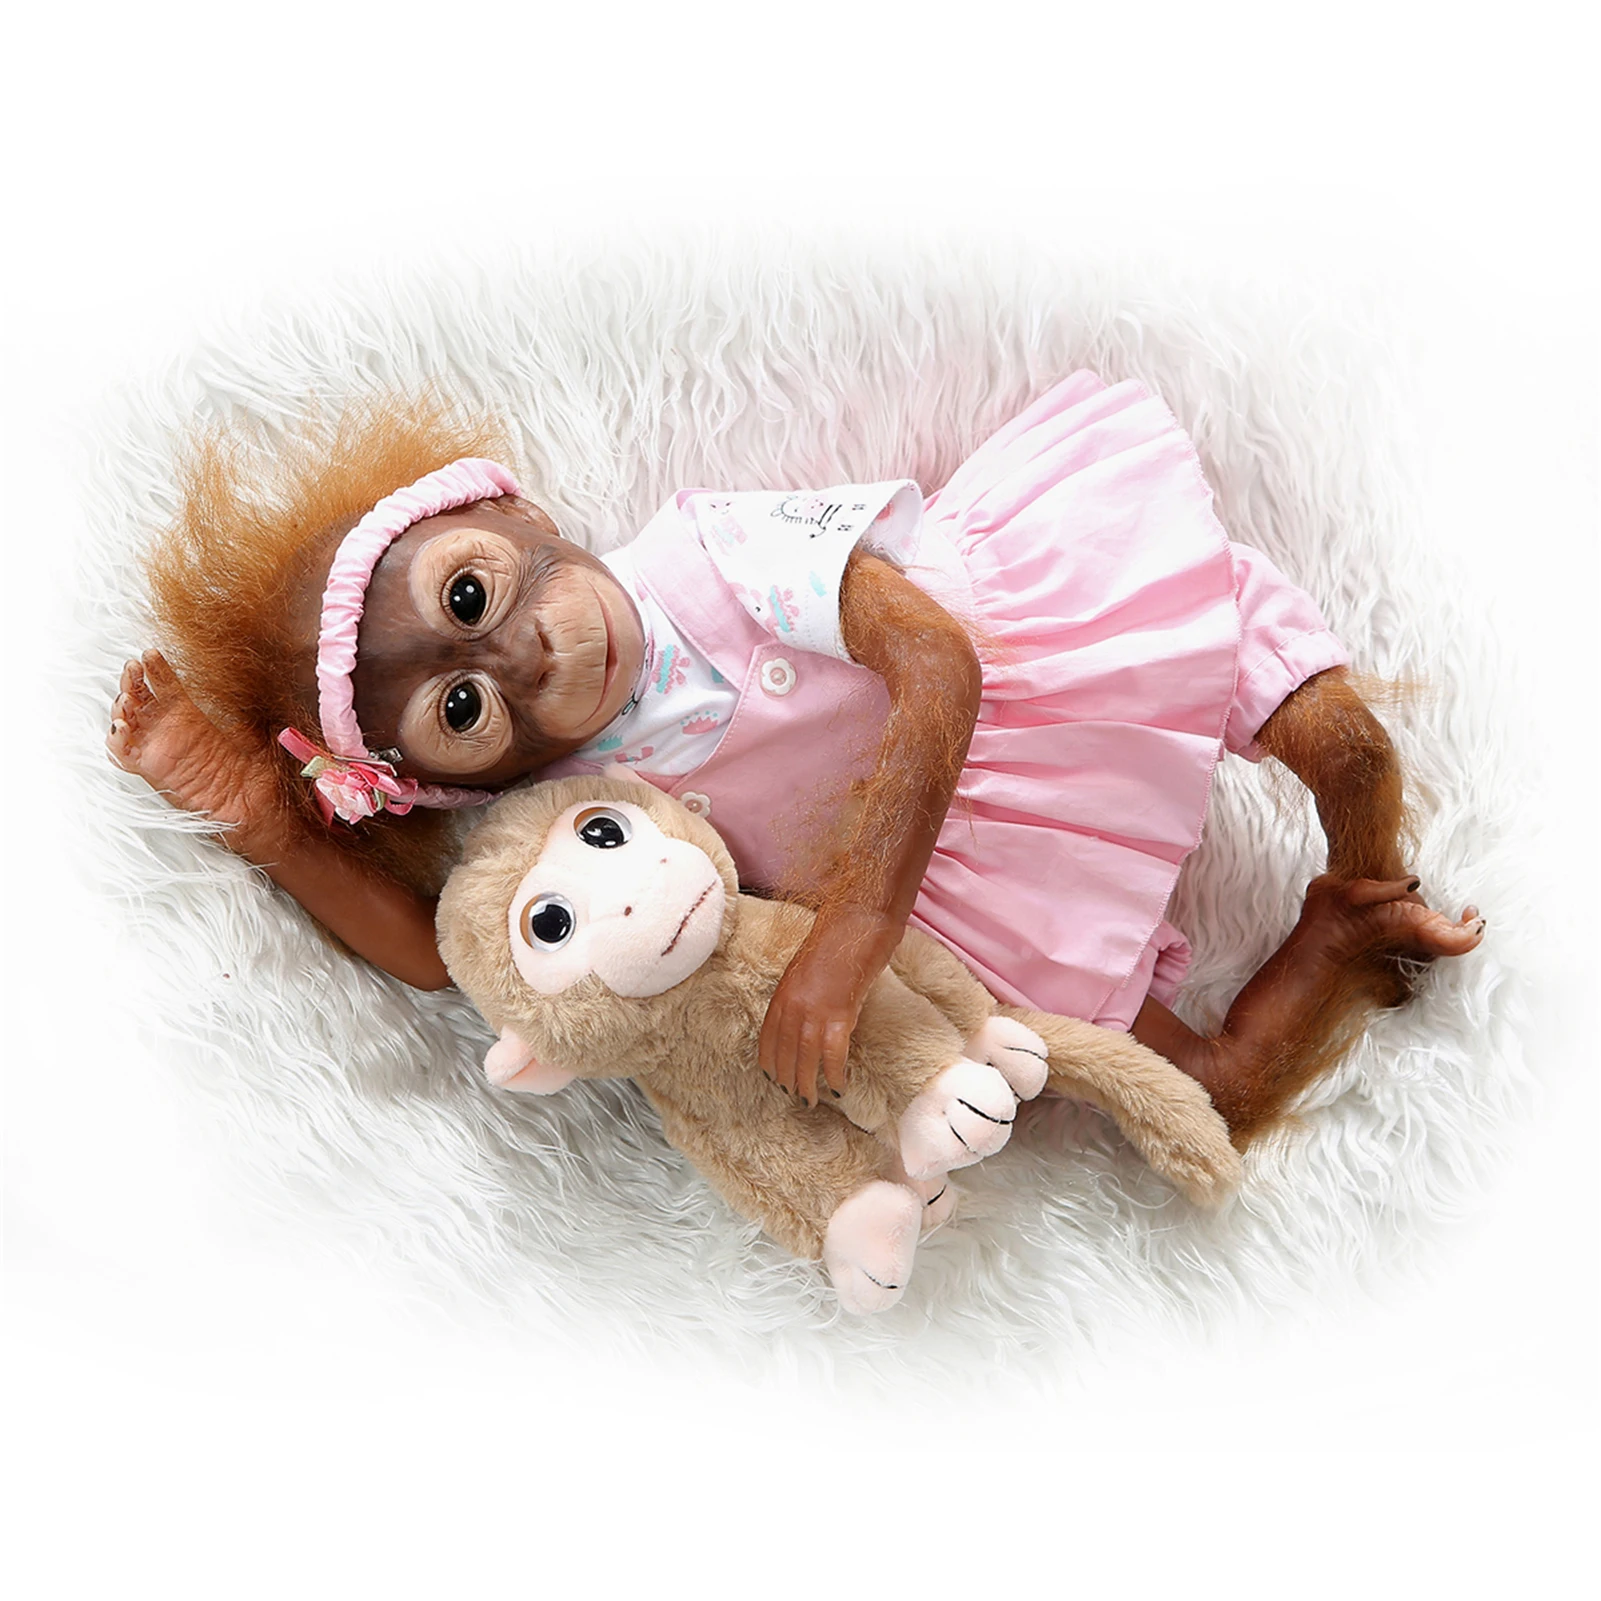 Decdeal 21 Zoll realistische Baby Monkey Doll lebensechte wiedergeborene K1F5 